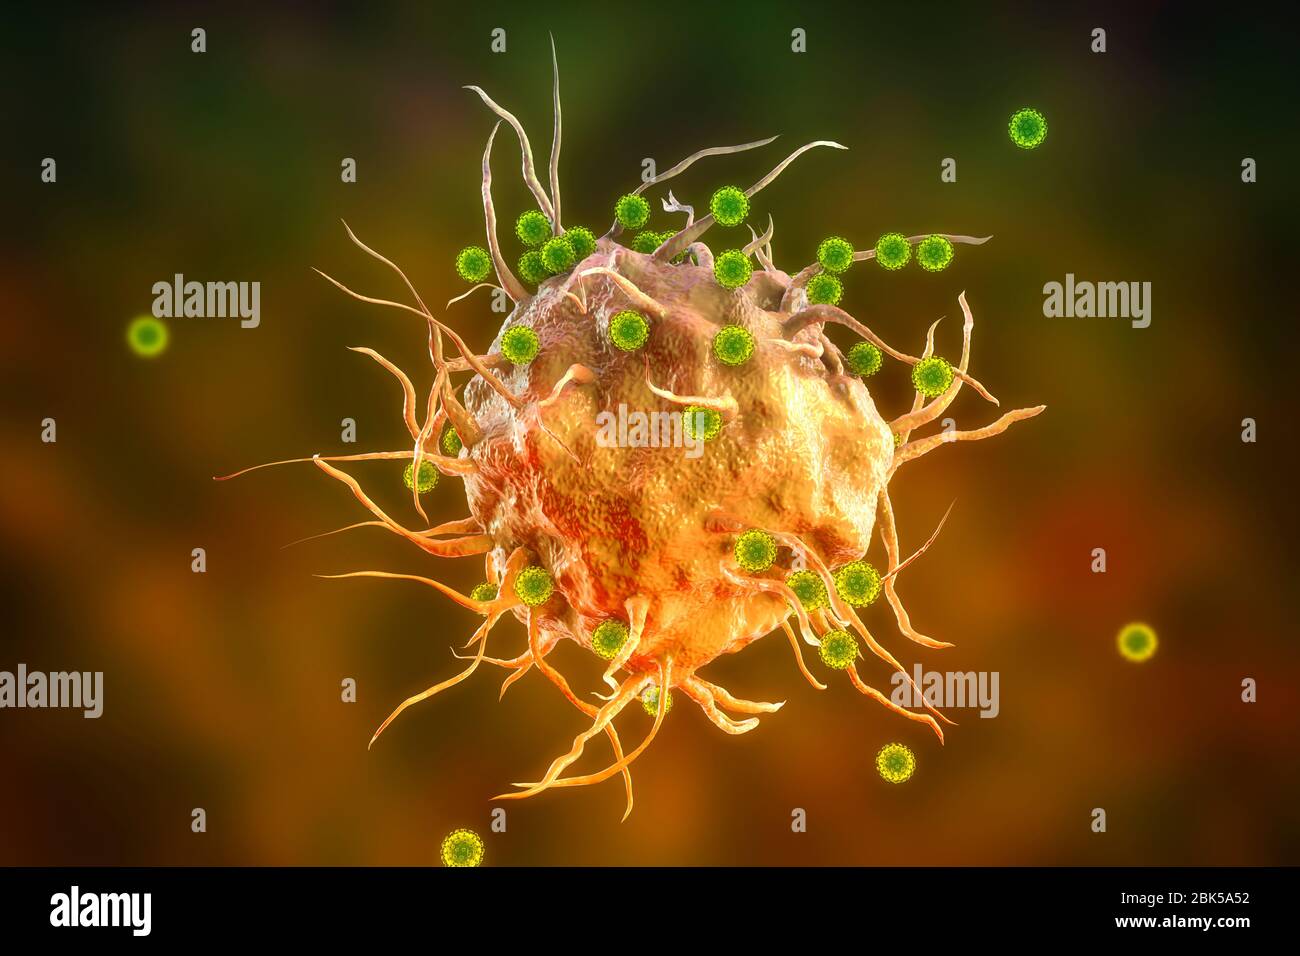 Virus du SRAS-COV-2 et cellule immunitaire. Image conceptuelle illustrant l'immunité antivirale et la vaccination. Banque D'Images